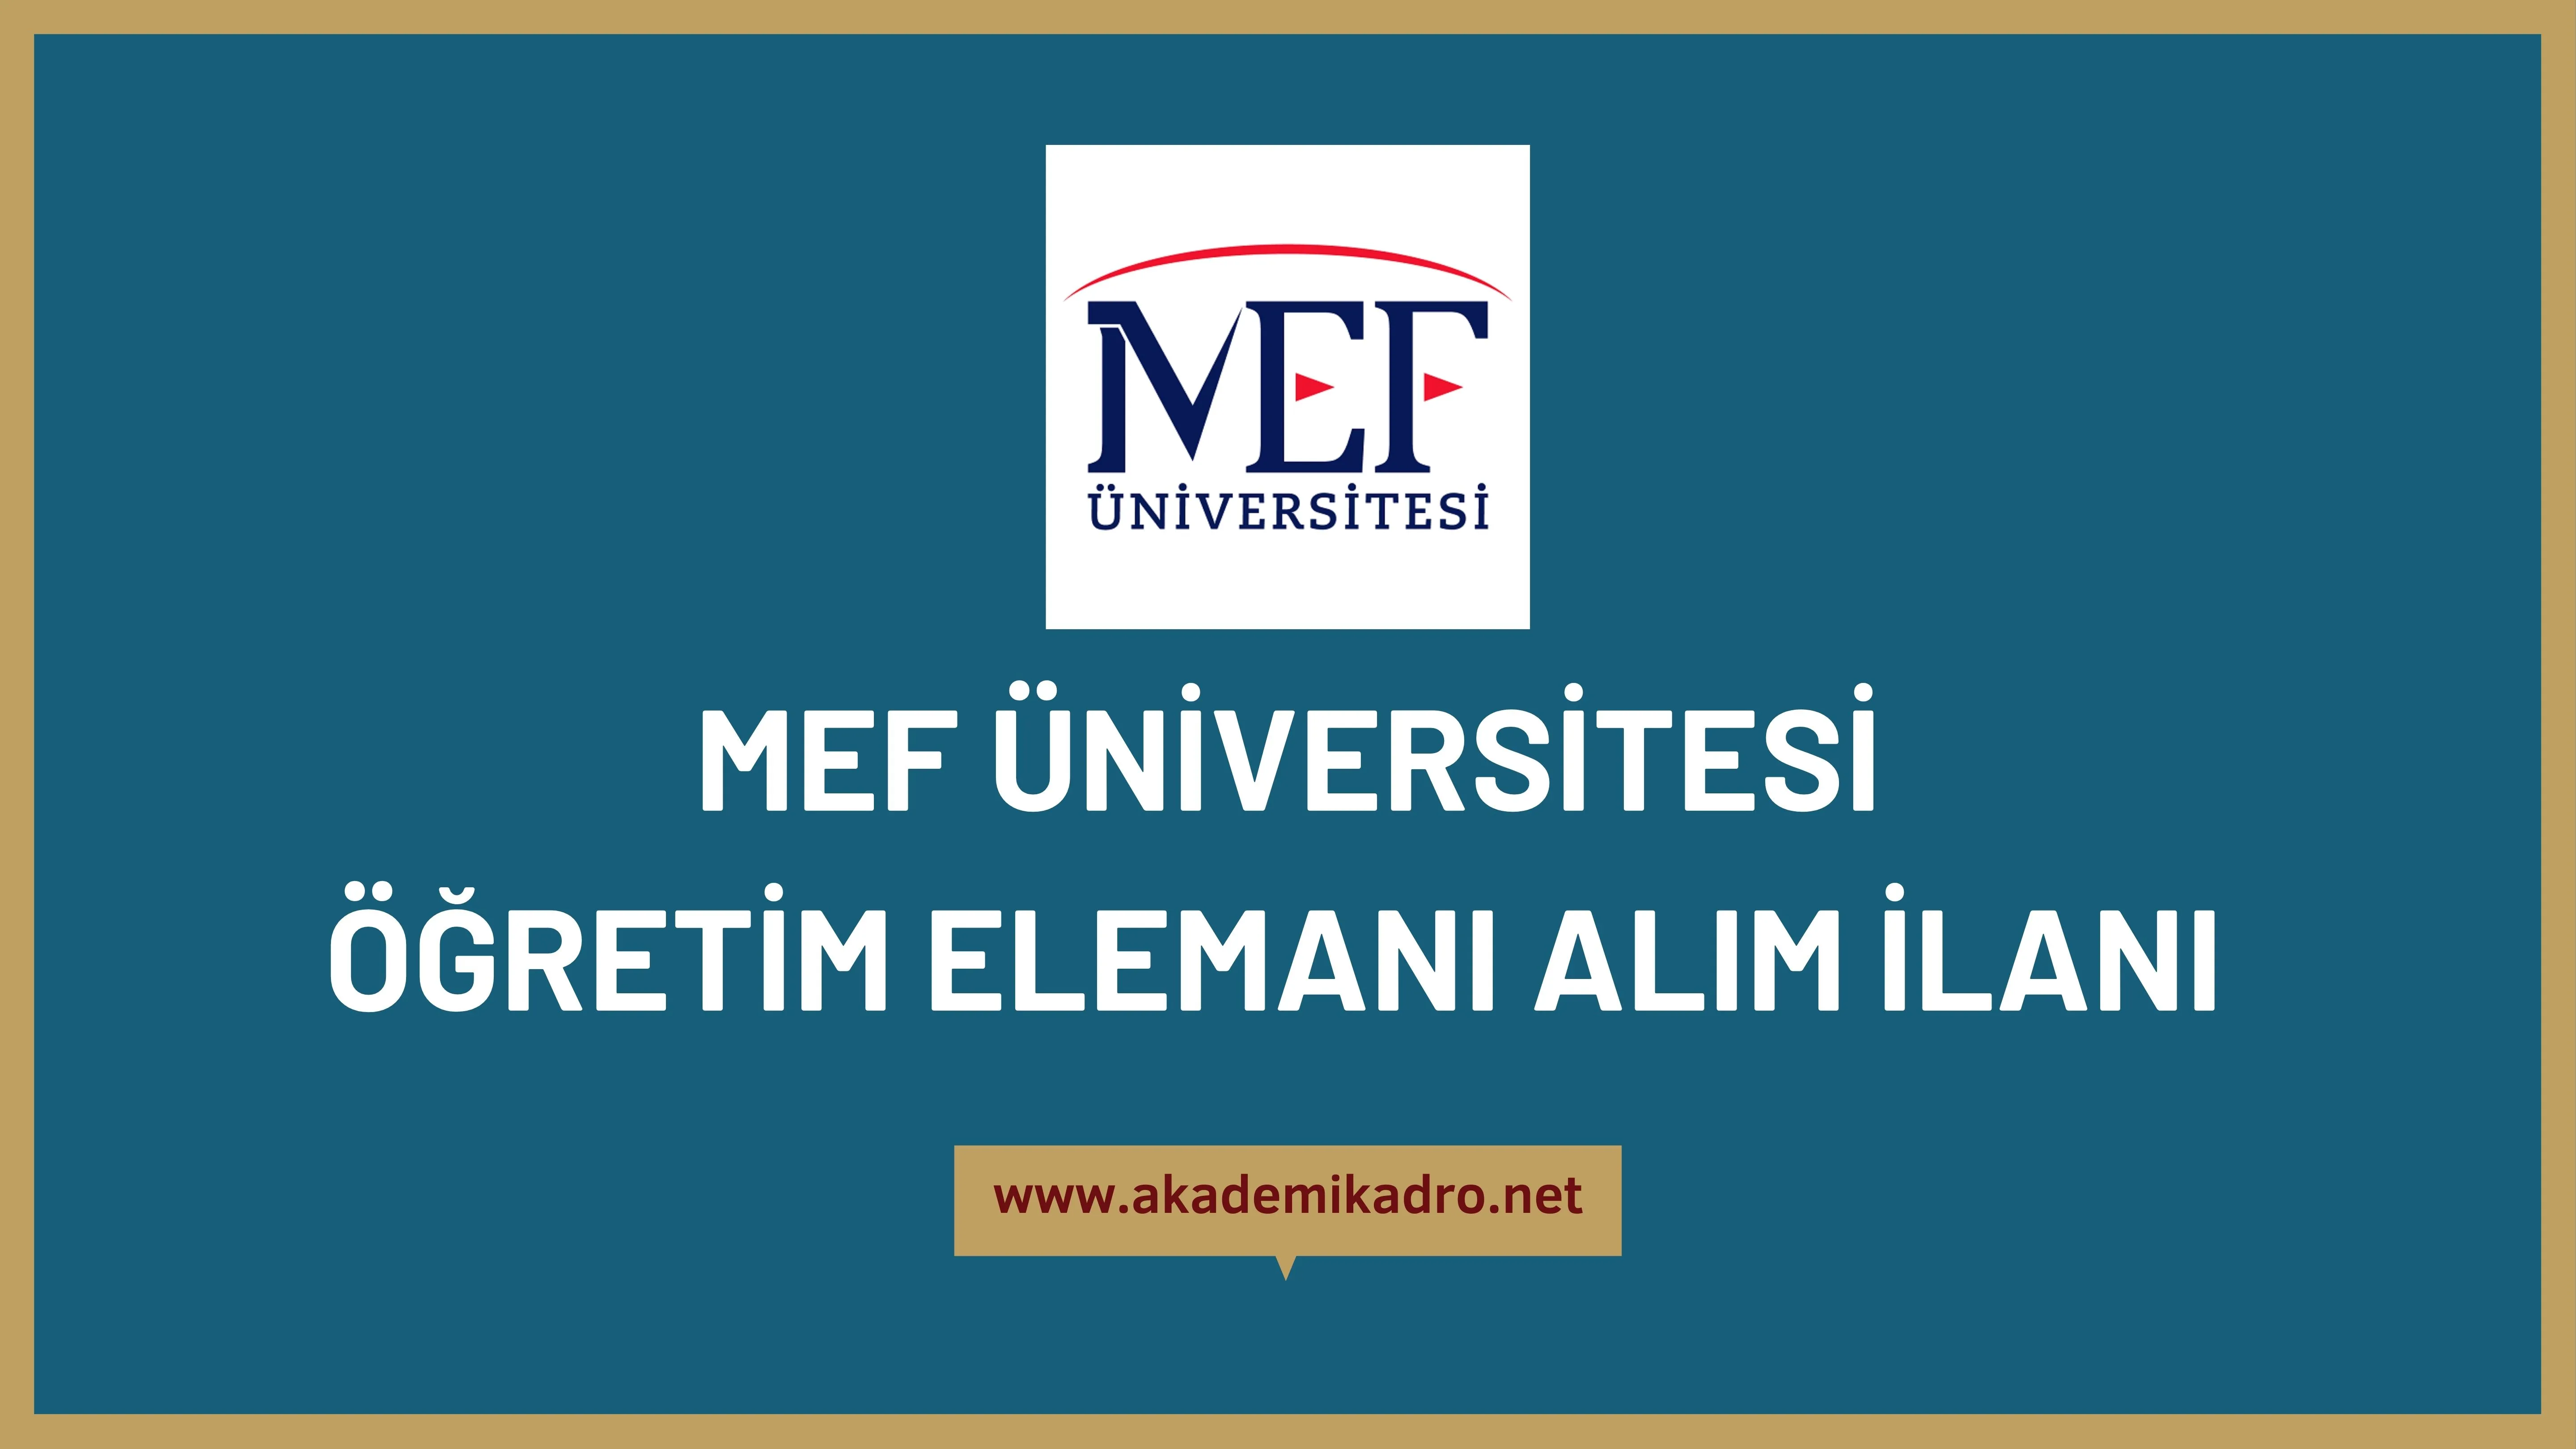 MEF Üniversitesi 2 Öğretim görevlisi, 3 Araştırma görevlisi ve 14 Öğretim üyesi alacak.